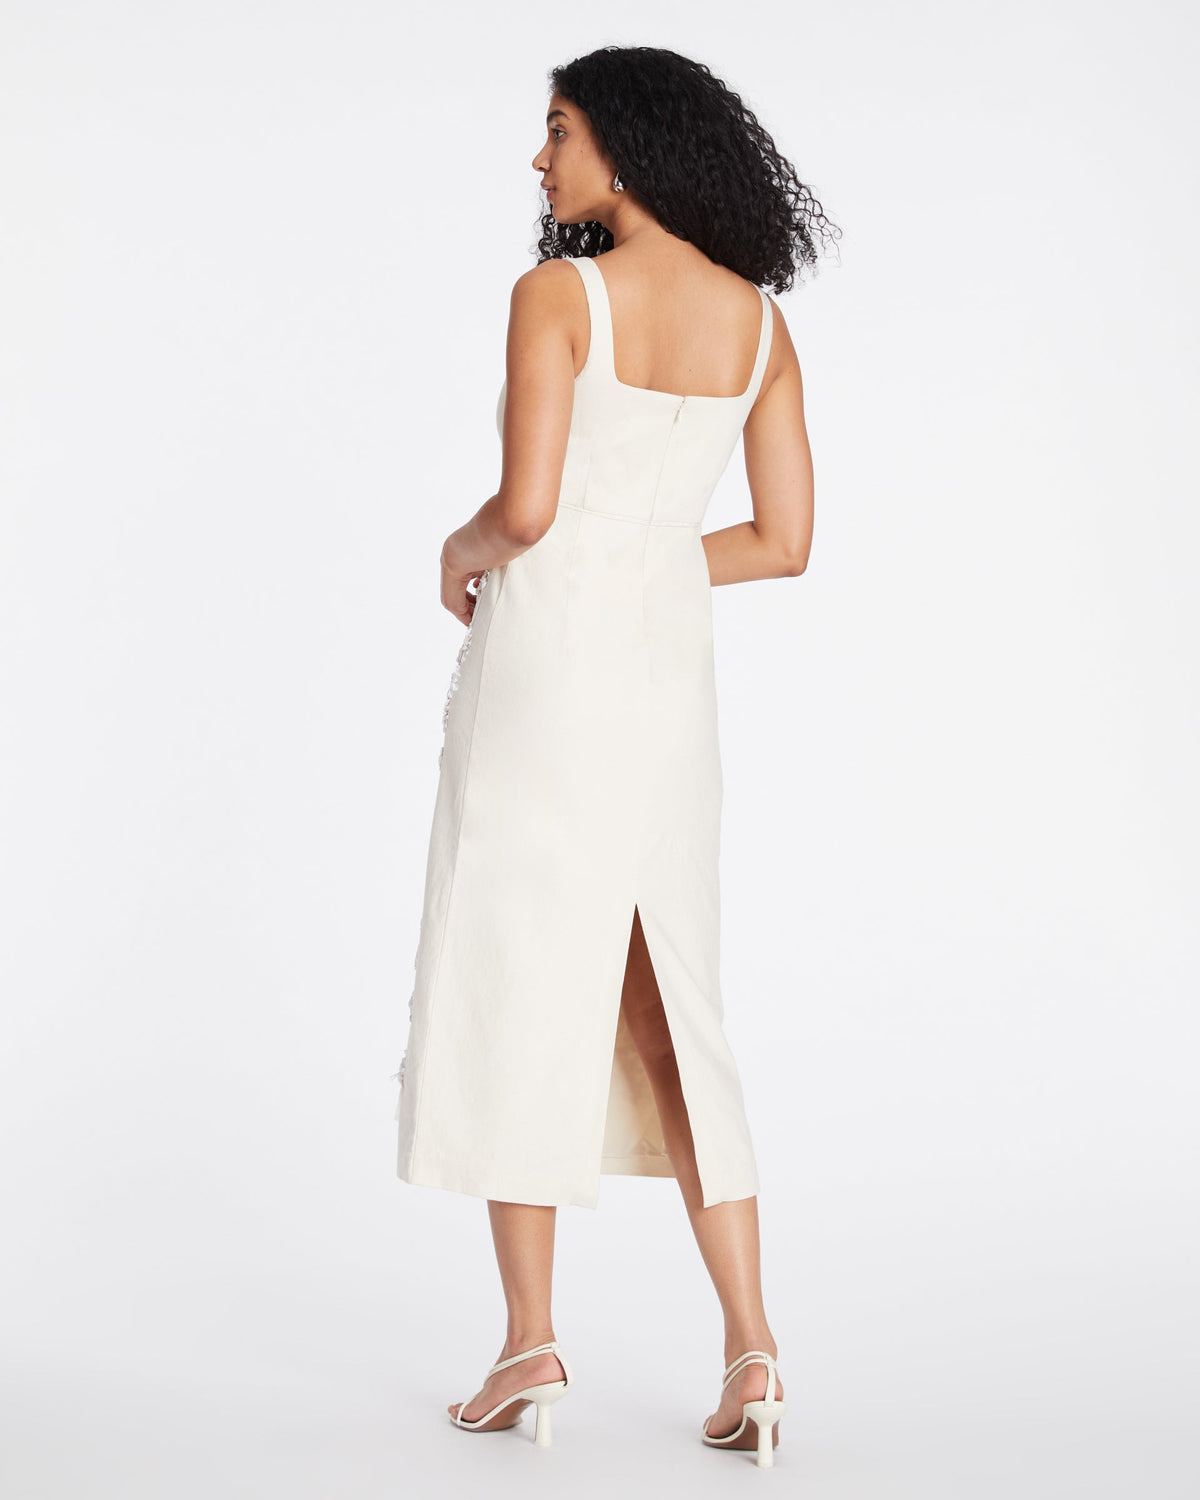 Merritt Dress in Cream/White